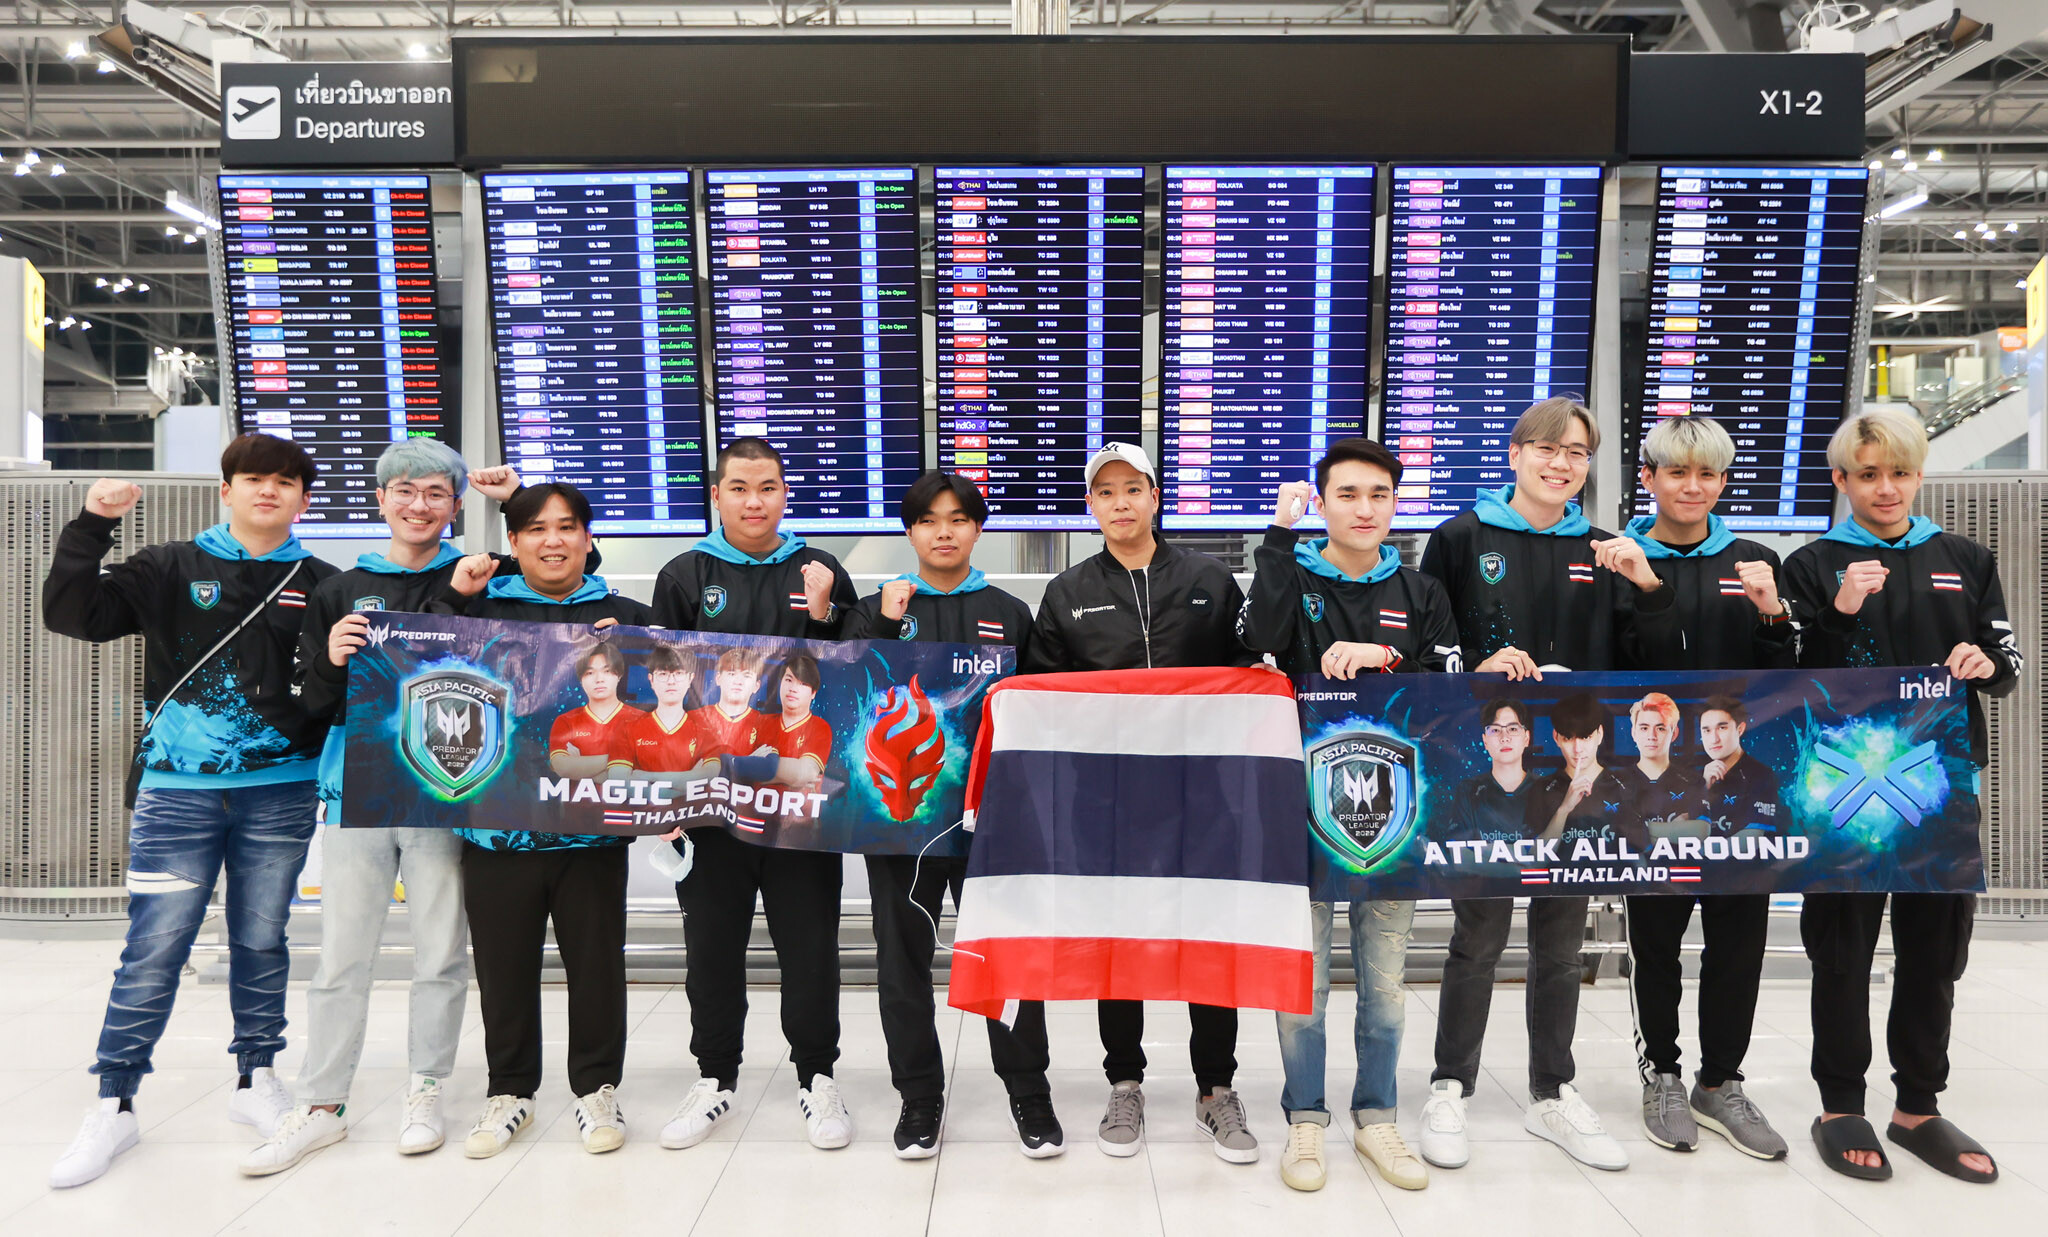 เอเซอร์ ส่ง 2 ทีมตัวแทนจากประเทศไทย Magic Esport และ Attack All Around ร่วมแข่งขันชิงชนะเลิศ "Asia Pacific Predator League 2022" โตเกียว ประเทศญี่ปุ่น